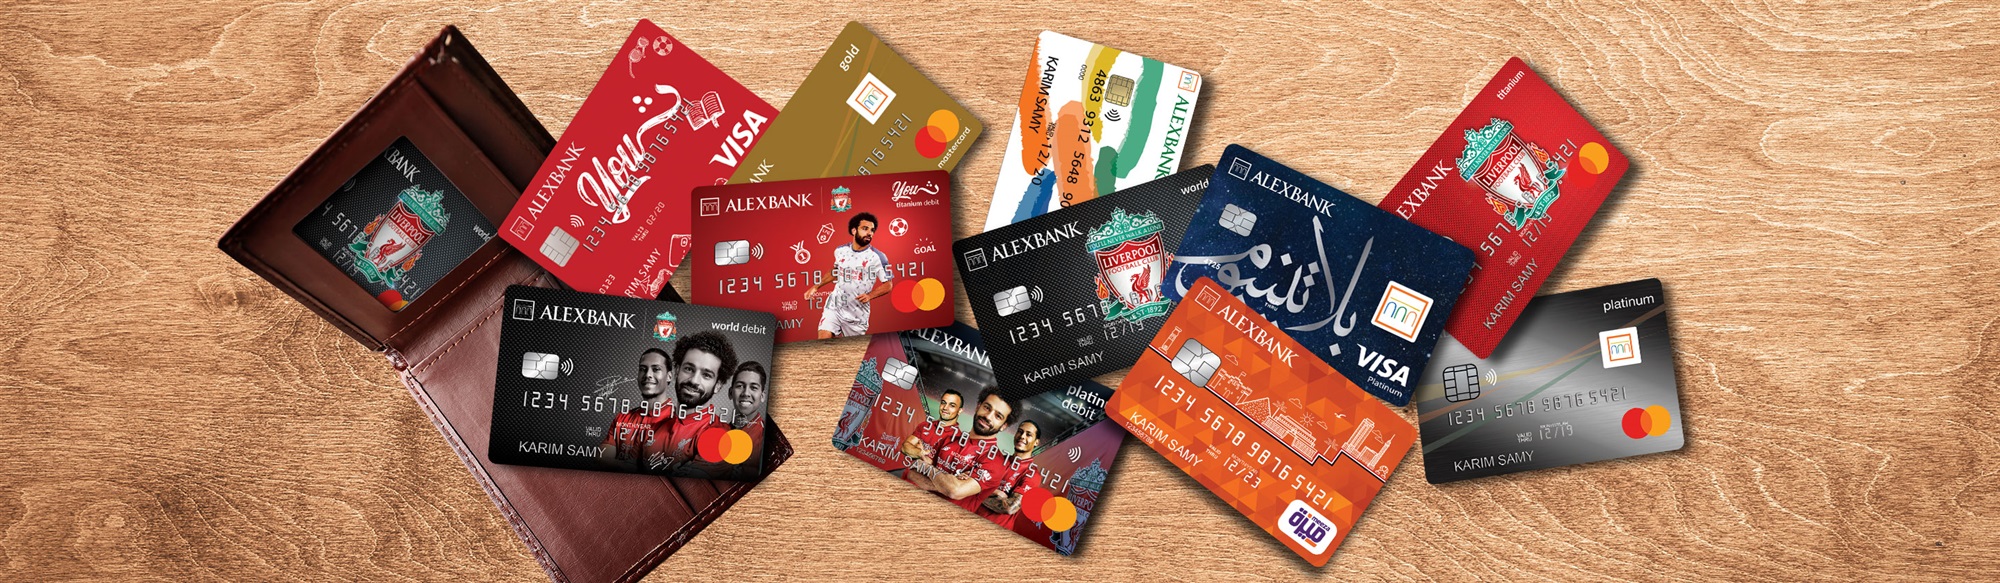 بطاقات فيزا من بنك الإسكندرية